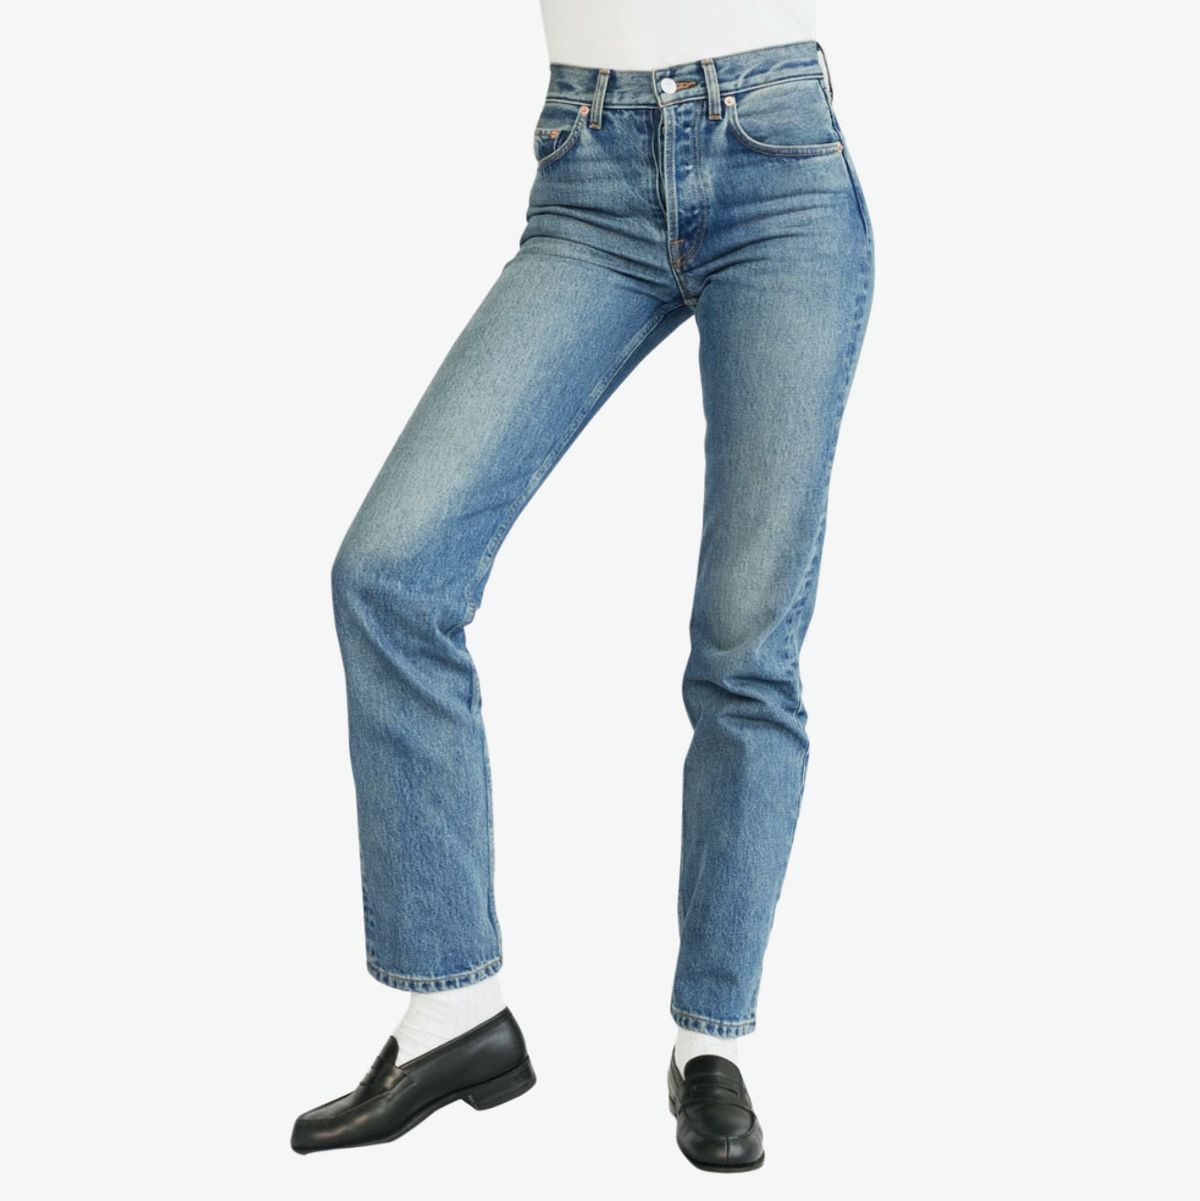 top jeans brands 2019